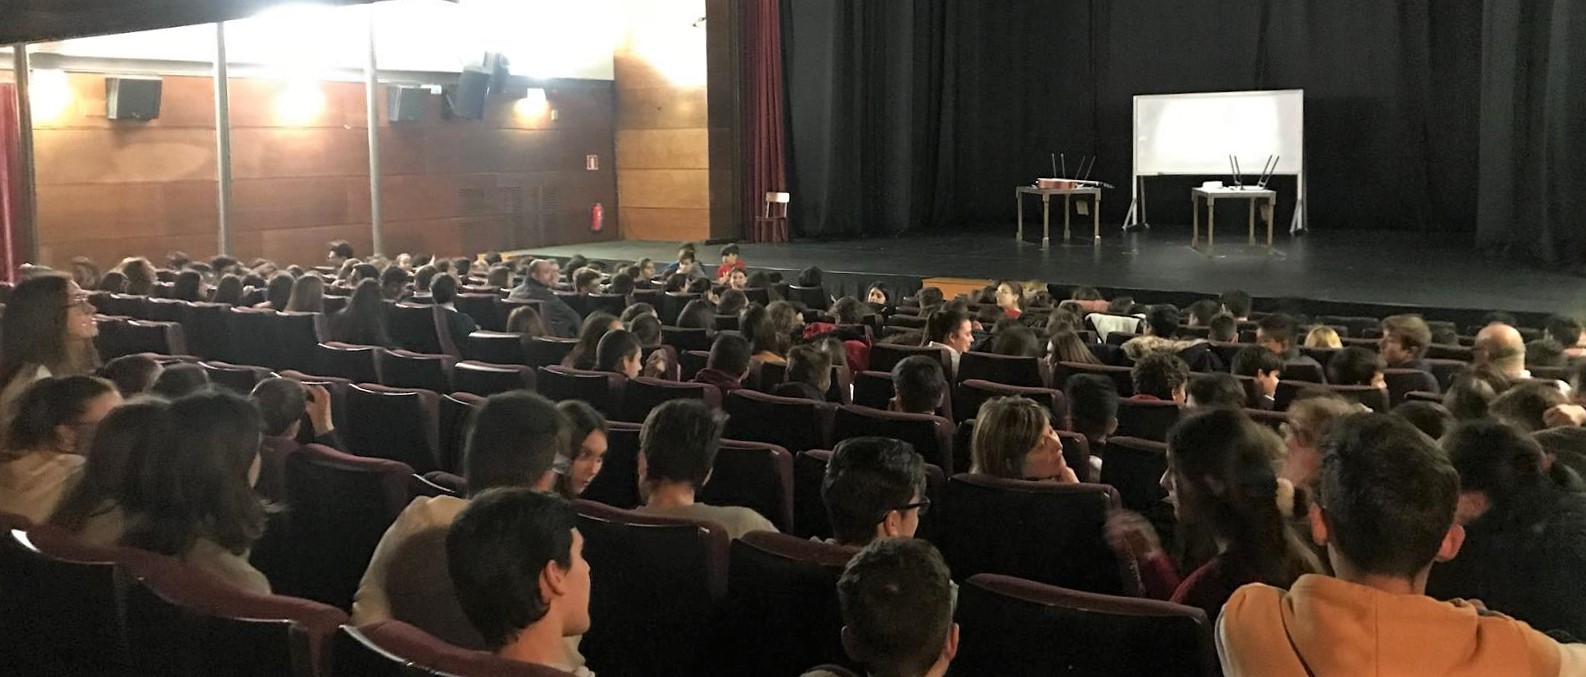 2018.03.07 S'inicia la nova temporada de teatre escolar a Canals